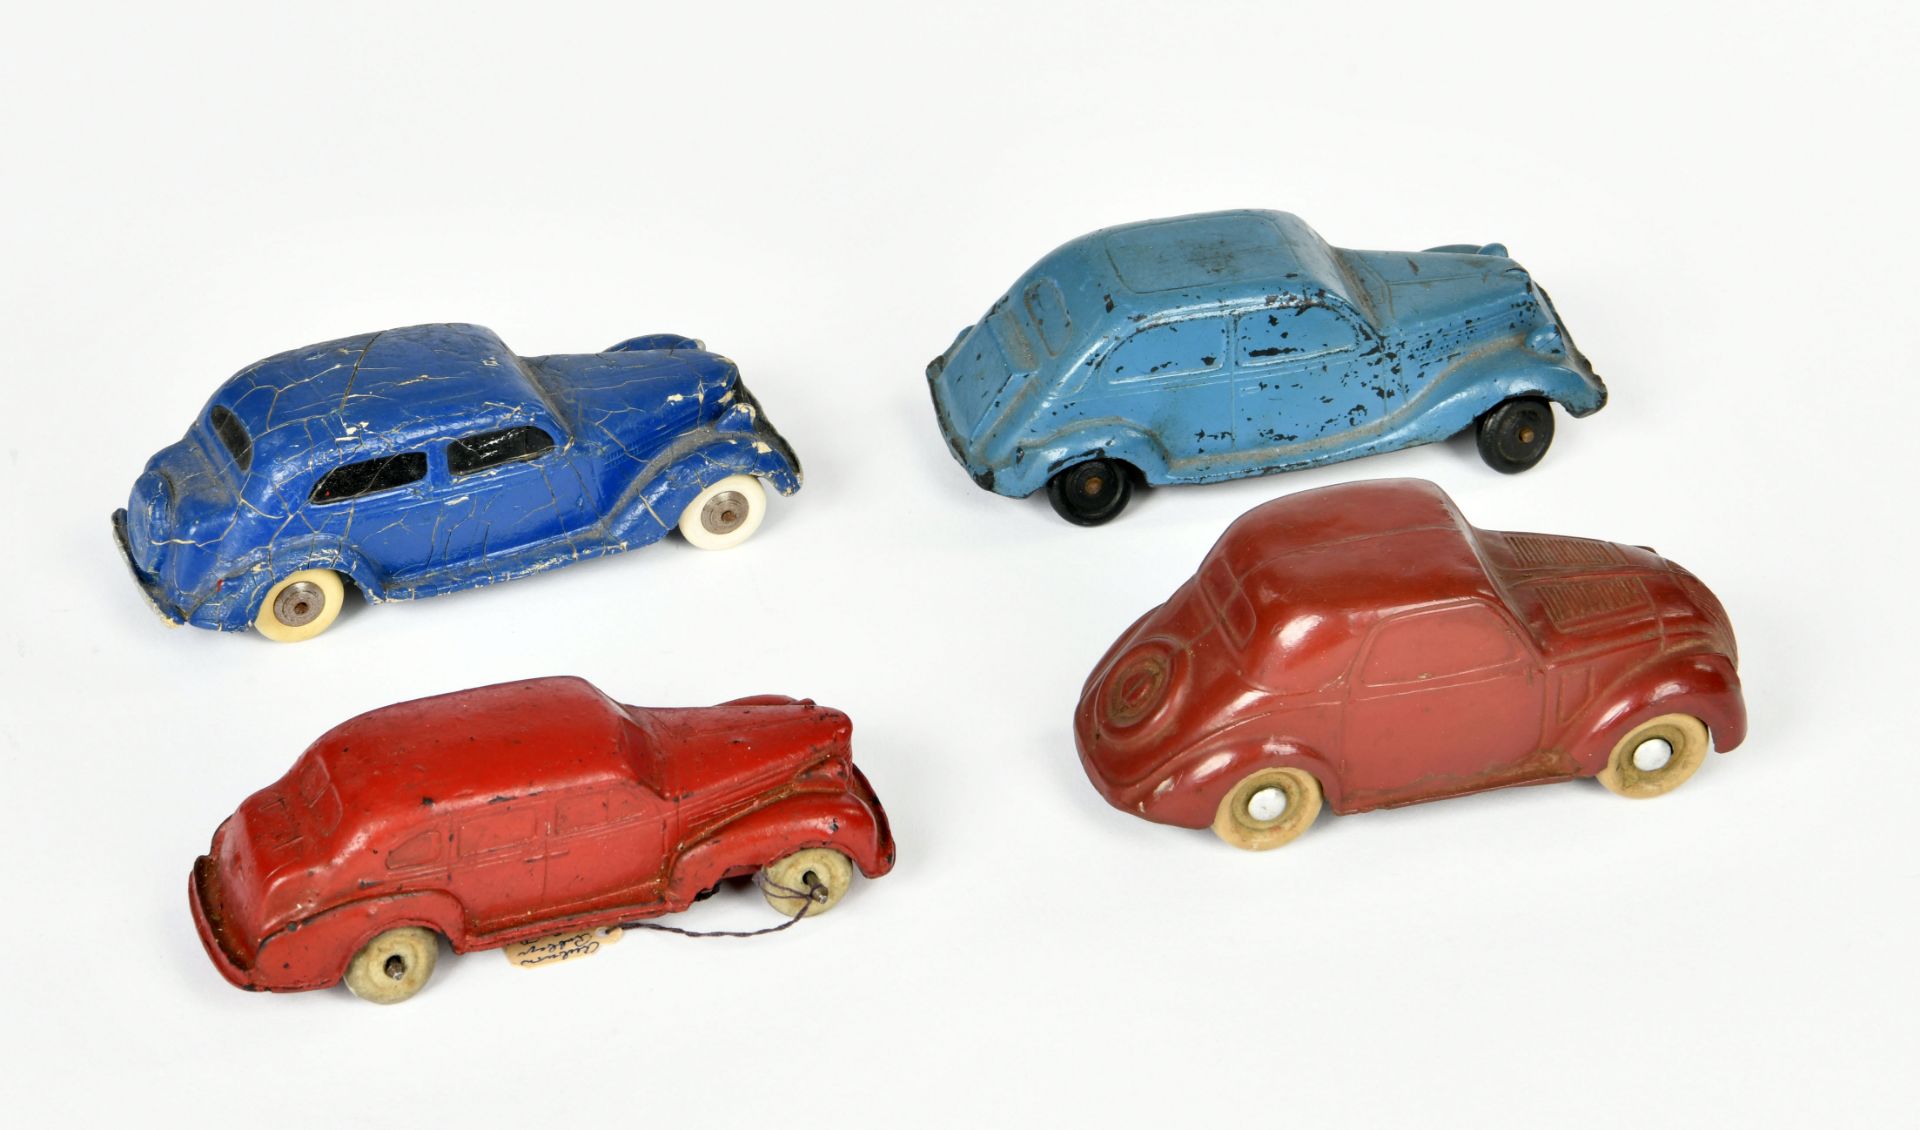 Auburn a.o., 4 rubber cars, USA a.o., 12-14 cm, paint d.